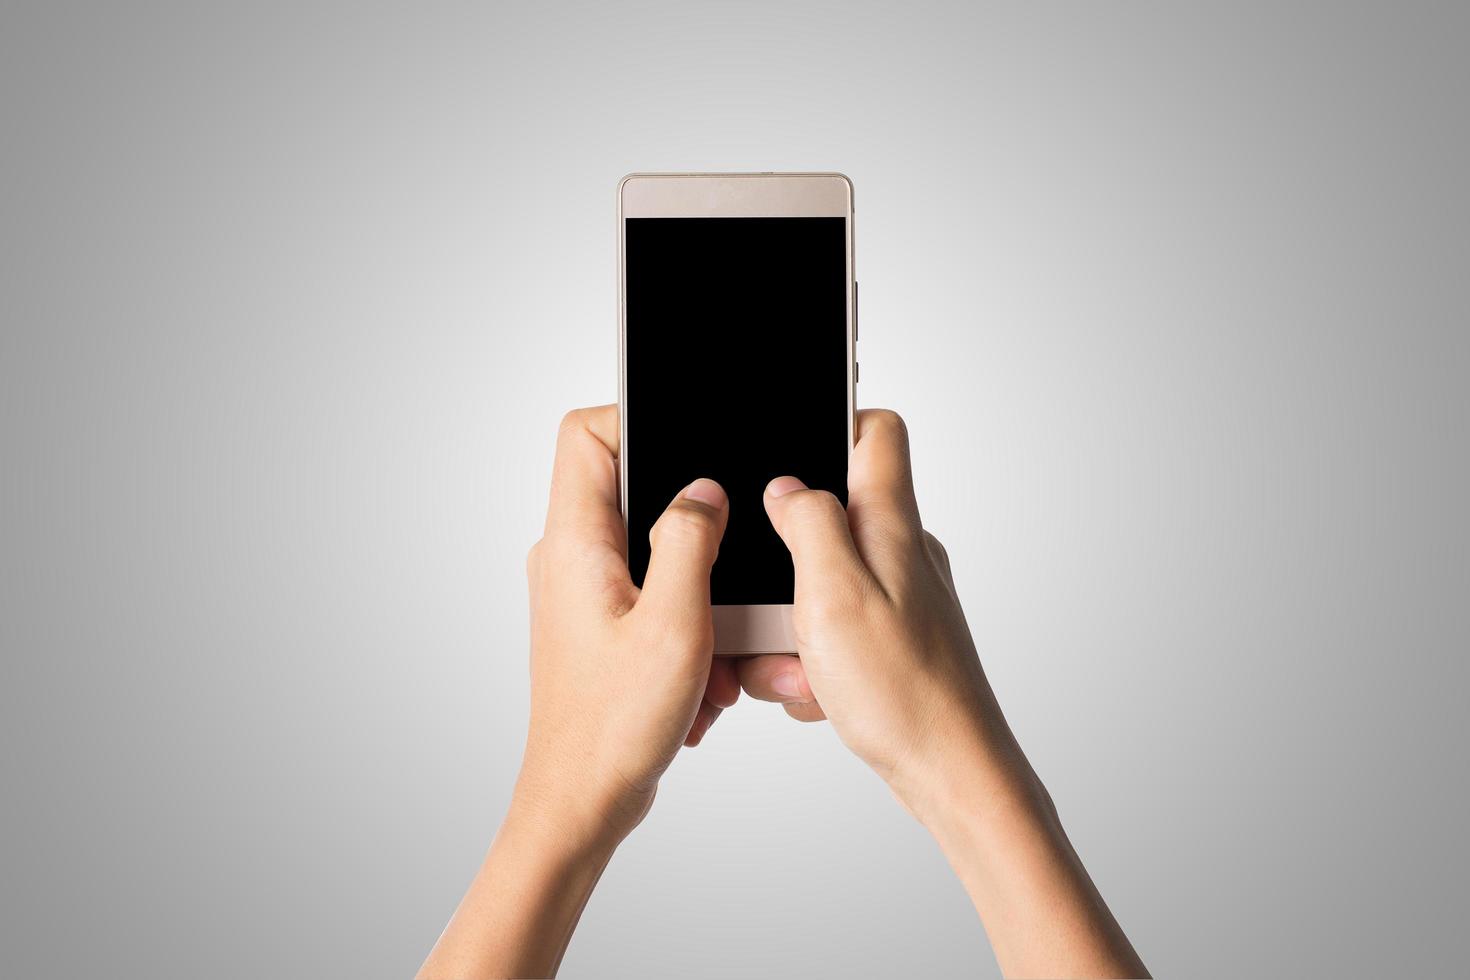 mão segurando um smartphone isolado no fundo branco foto